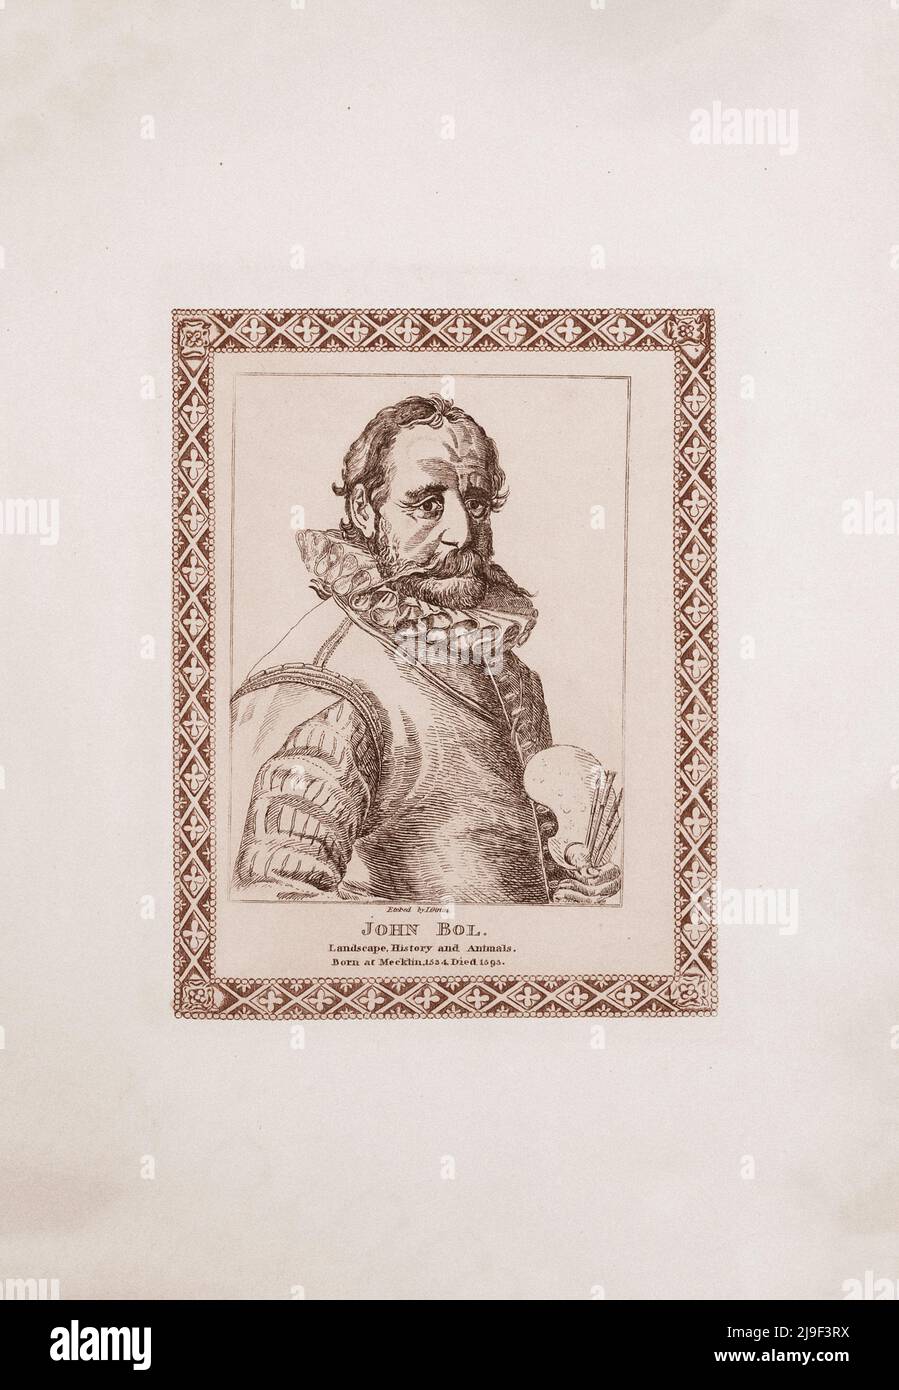 Grabado retrato de Hans (John) Bol. Por James Girtin. 1817 Hans Bol o Jan Bol (1534 – 1593), fue un pintor flamenco, artista impreso, pintura miniaturista Foto de stock